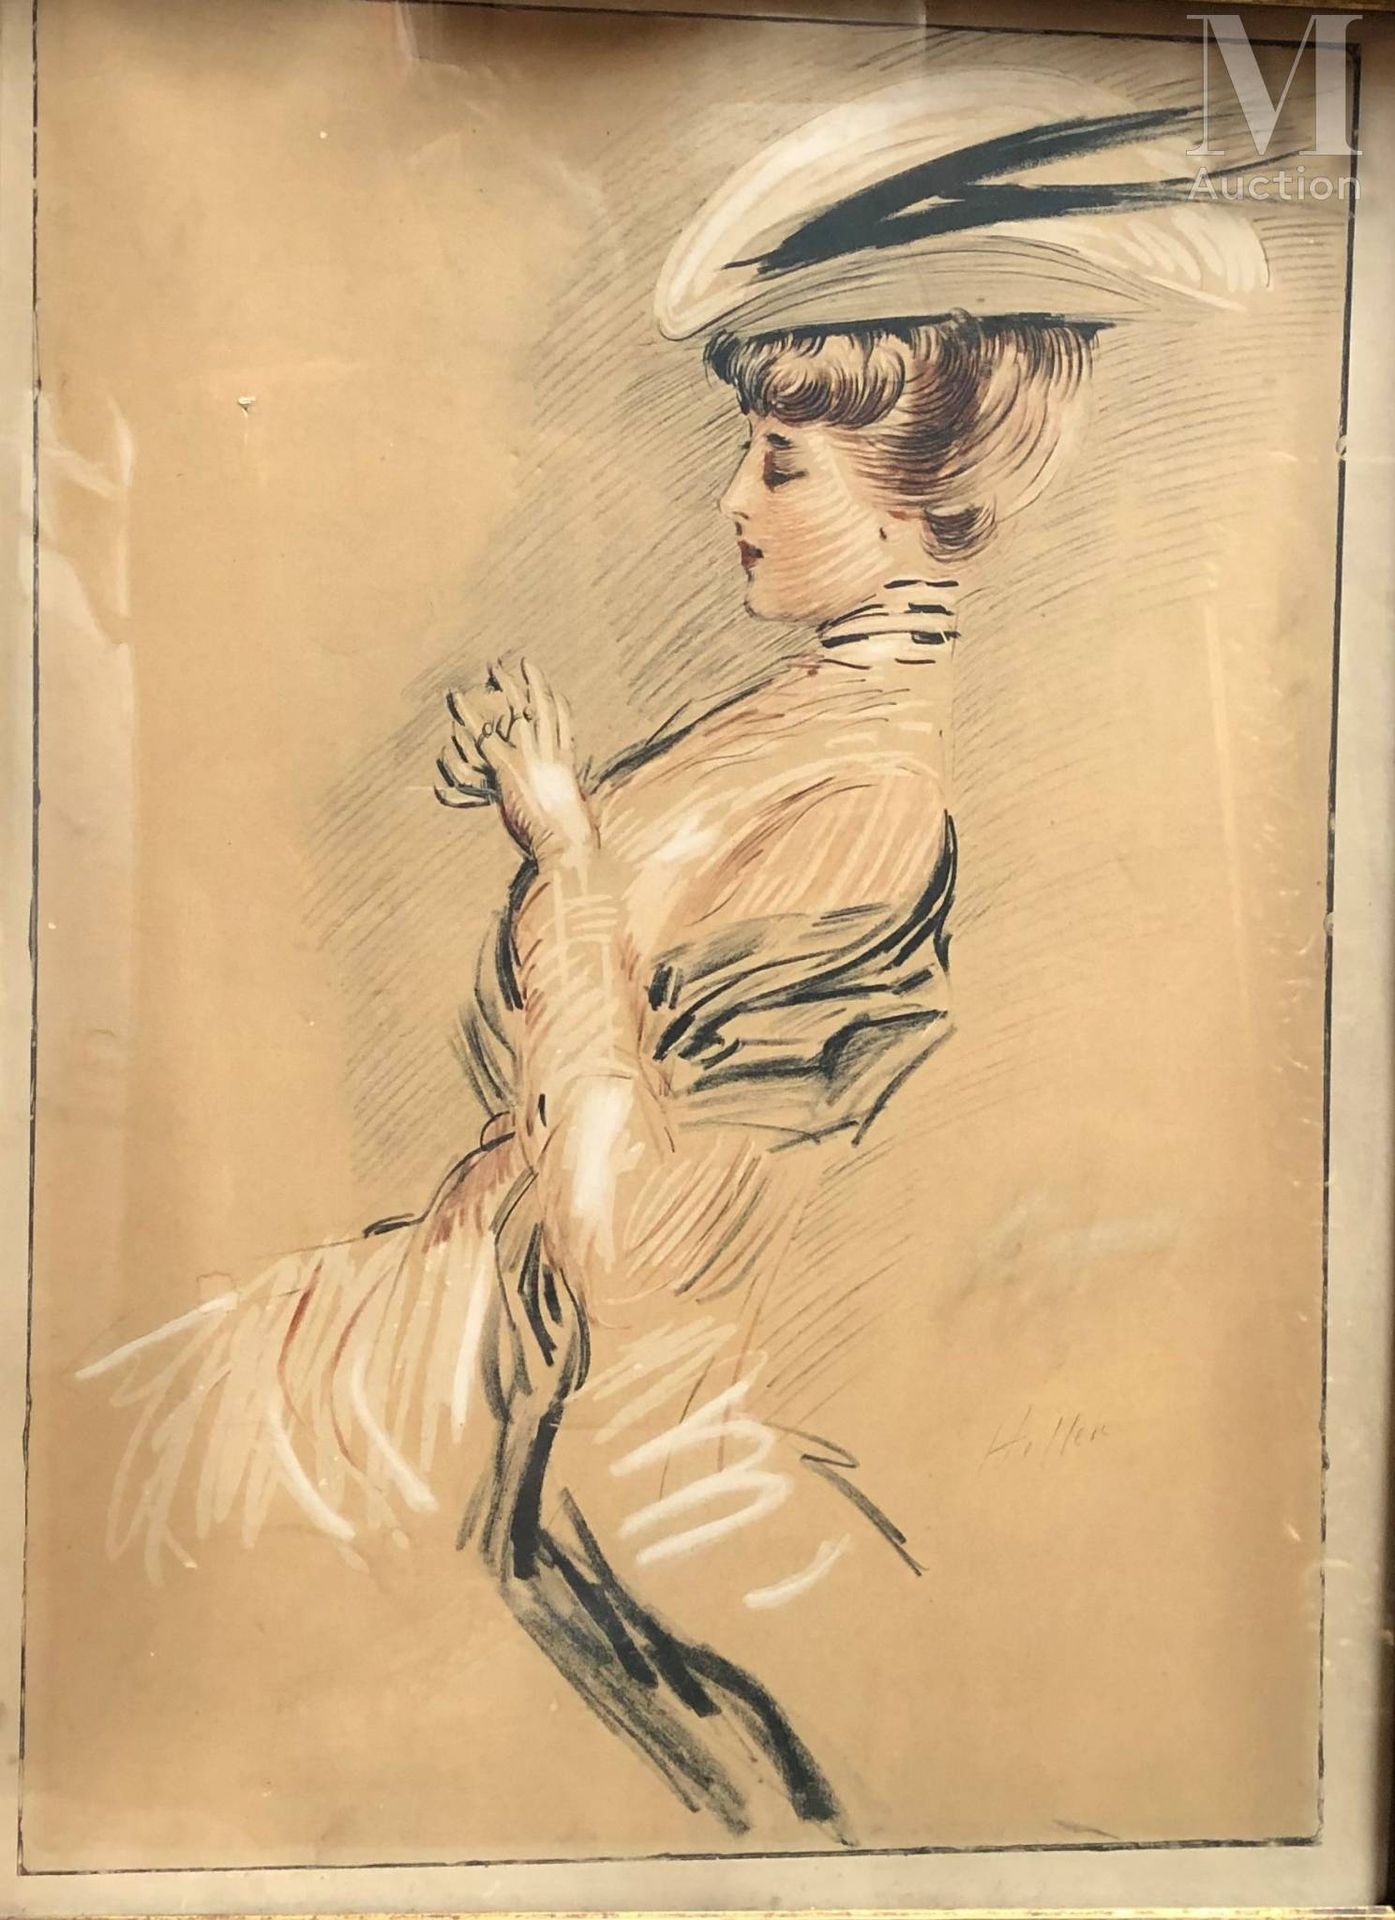 Paul César HELLEU (1859-1927) 新娘



彩色平版画

60 x 45厘米

右下方有签名